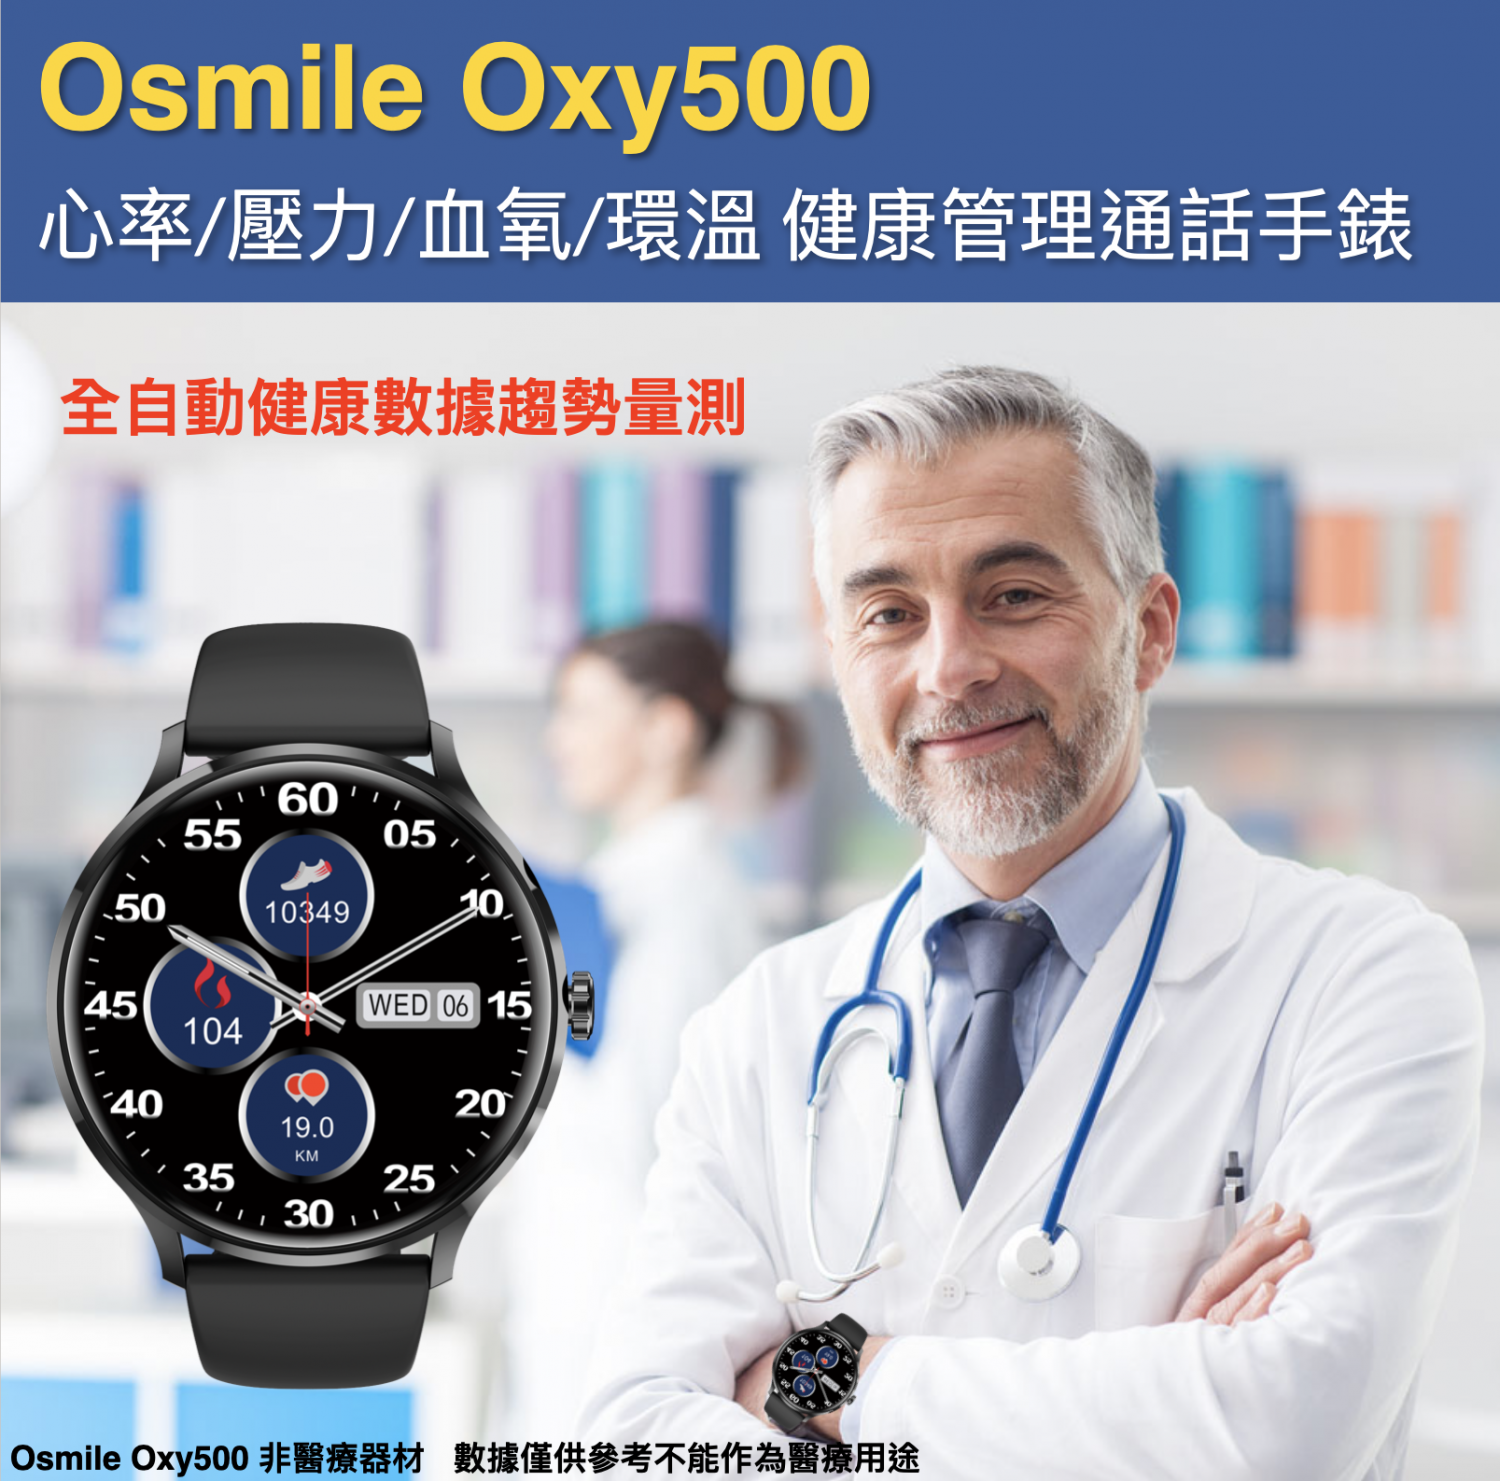 OXY500 (L) 全自動心率血氧睡眠健康管理藍芽通話手錶